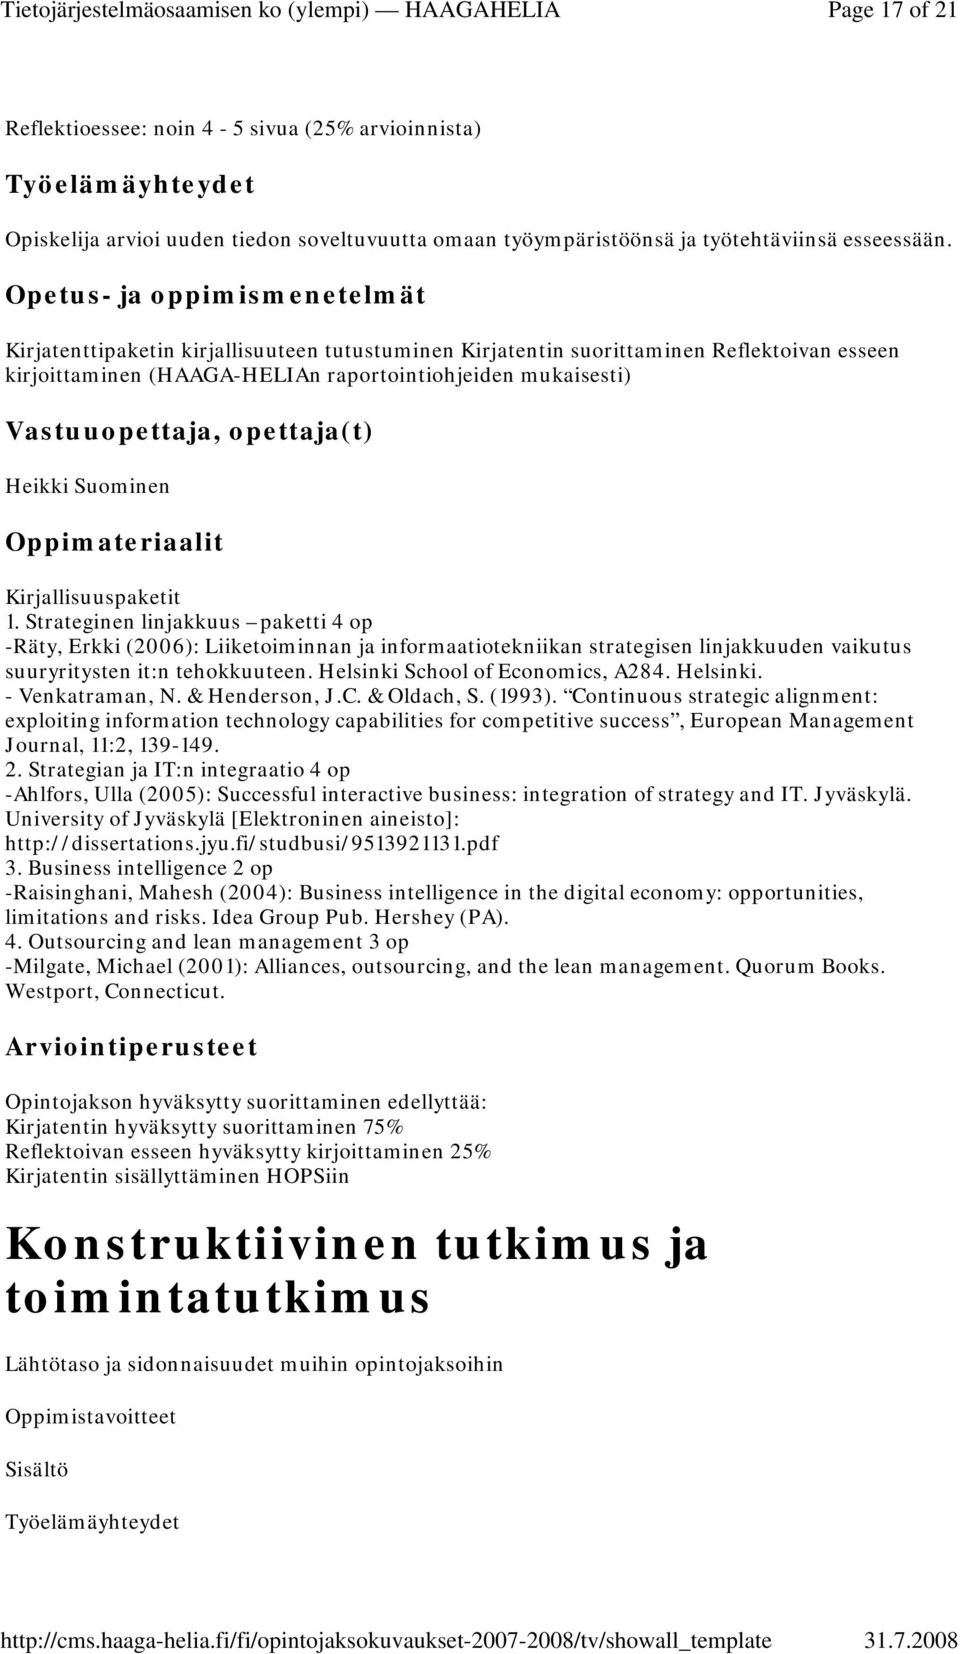 Strateginen linjakkuus paketti 4 op -Räty, Erkki (2006): Liiketoiminnan ja informaatiotekniikan strategisen linjakkuuden vaikutus suuryritysten it:n tehokkuuteen. Helsinki School of Economics, A284.